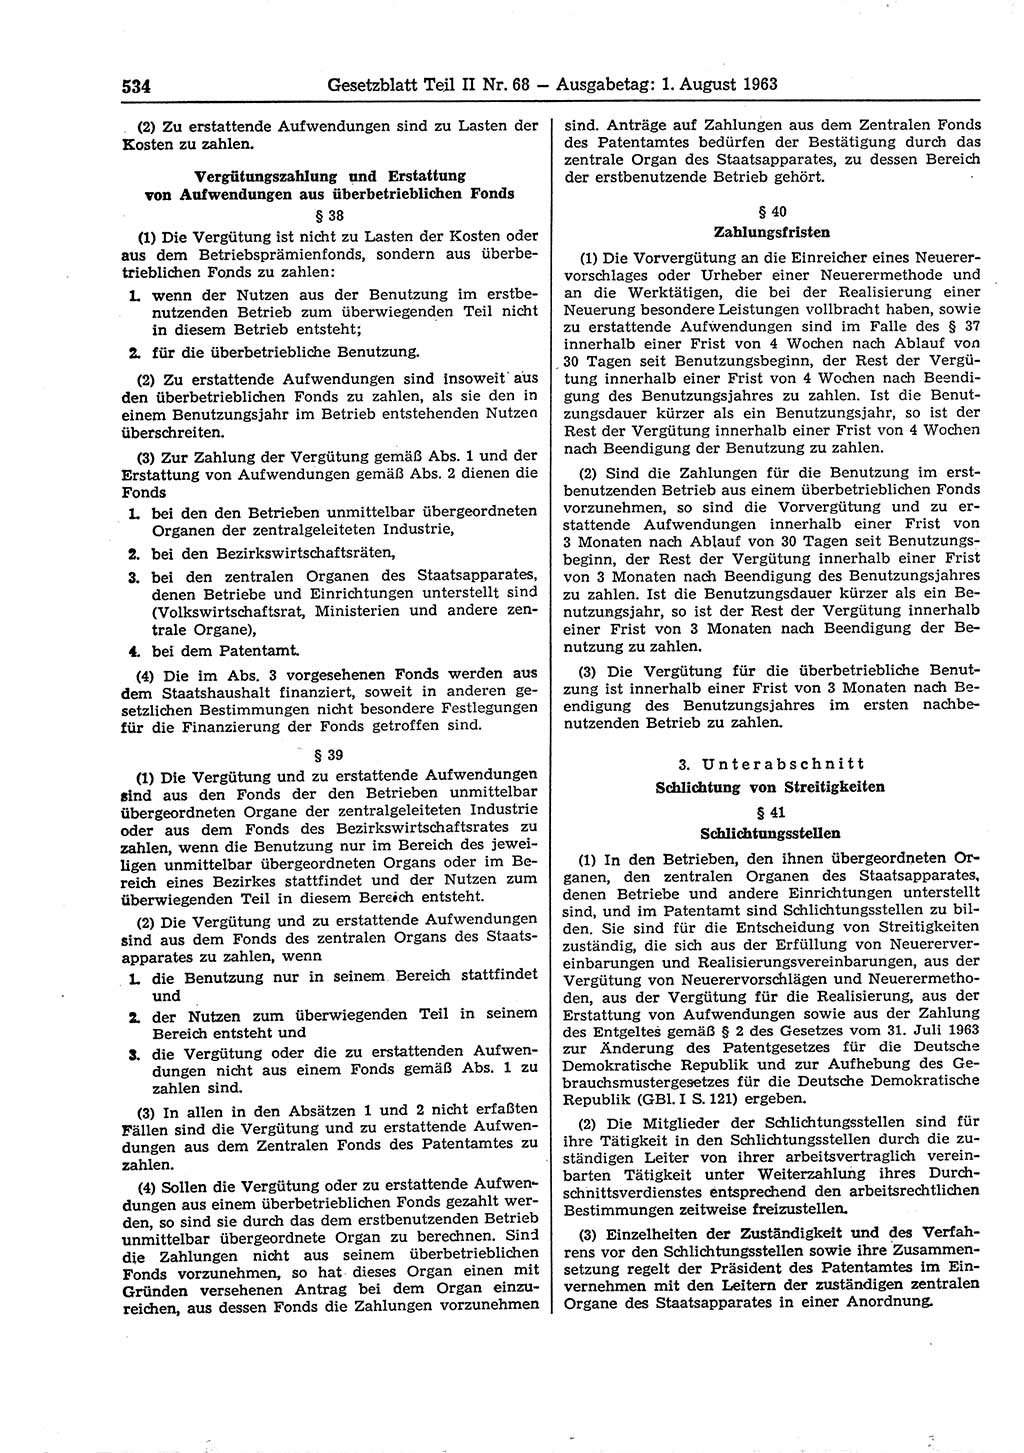 Gesetzblatt (GBl.) der Deutschen Demokratischen Republik (DDR) Teil ⅠⅠ 1963, Seite 534 (GBl. DDR ⅠⅠ 1963, S. 534)